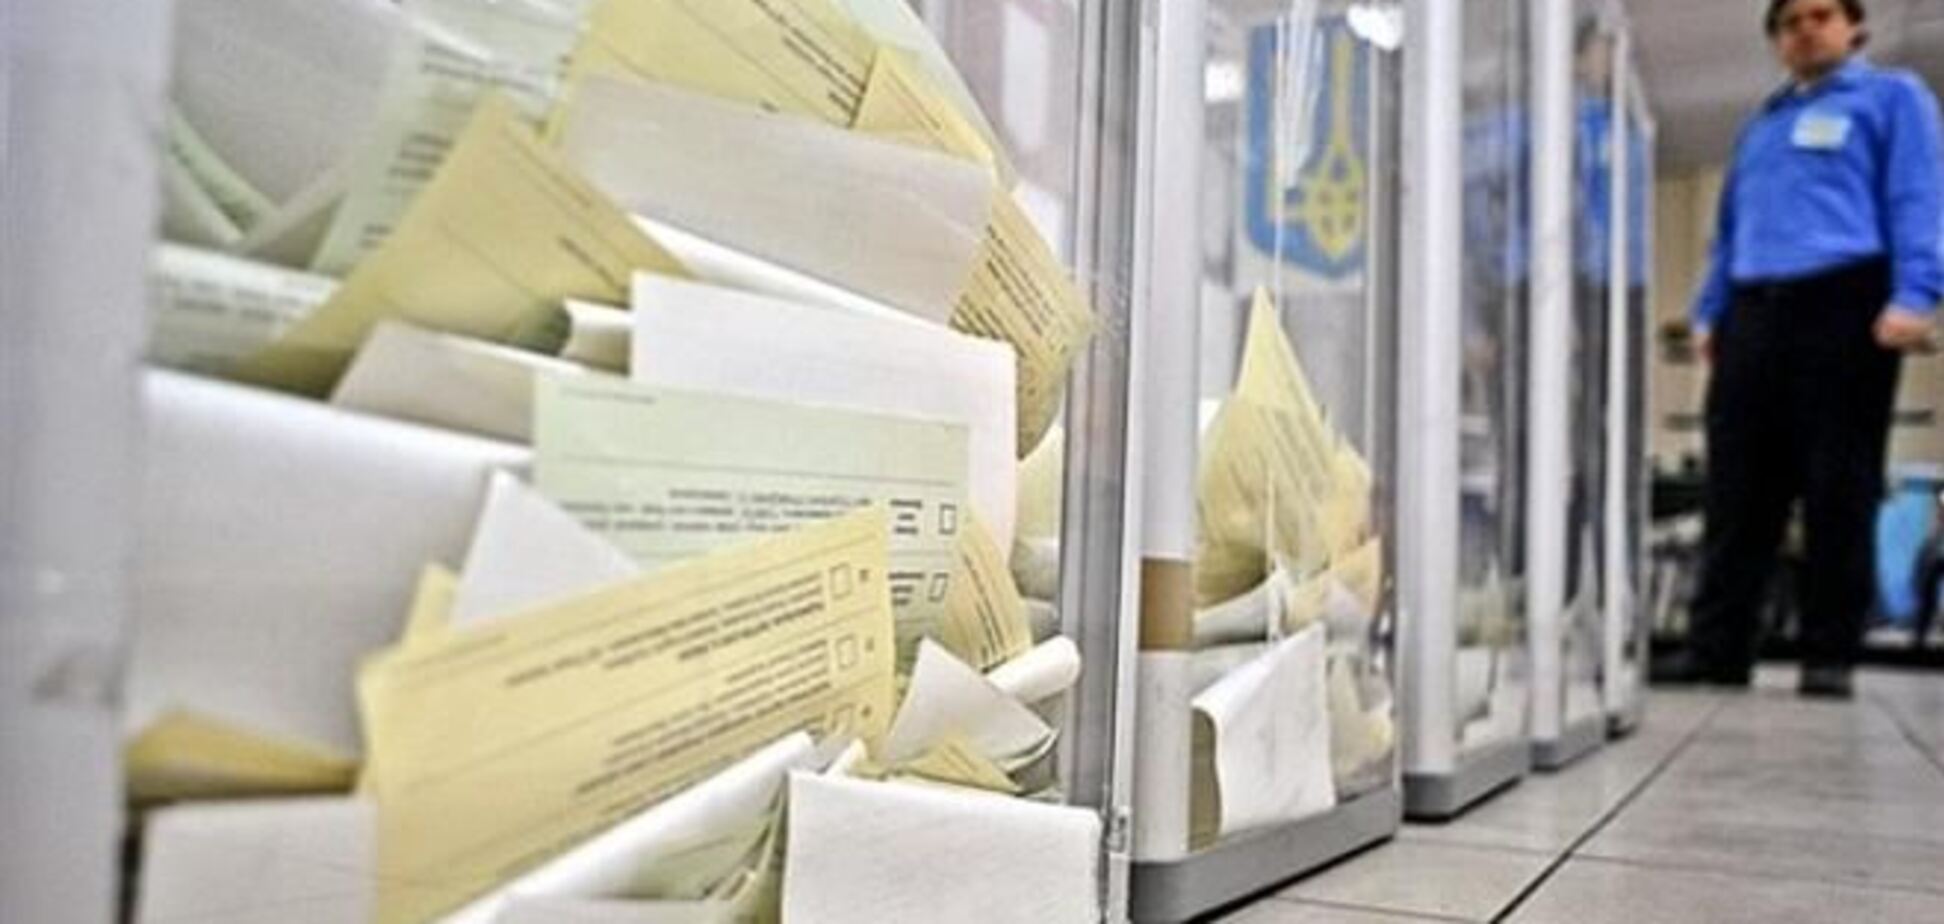 На перевибори в 'проблемних' округах зареєстровано 177 кандидатів